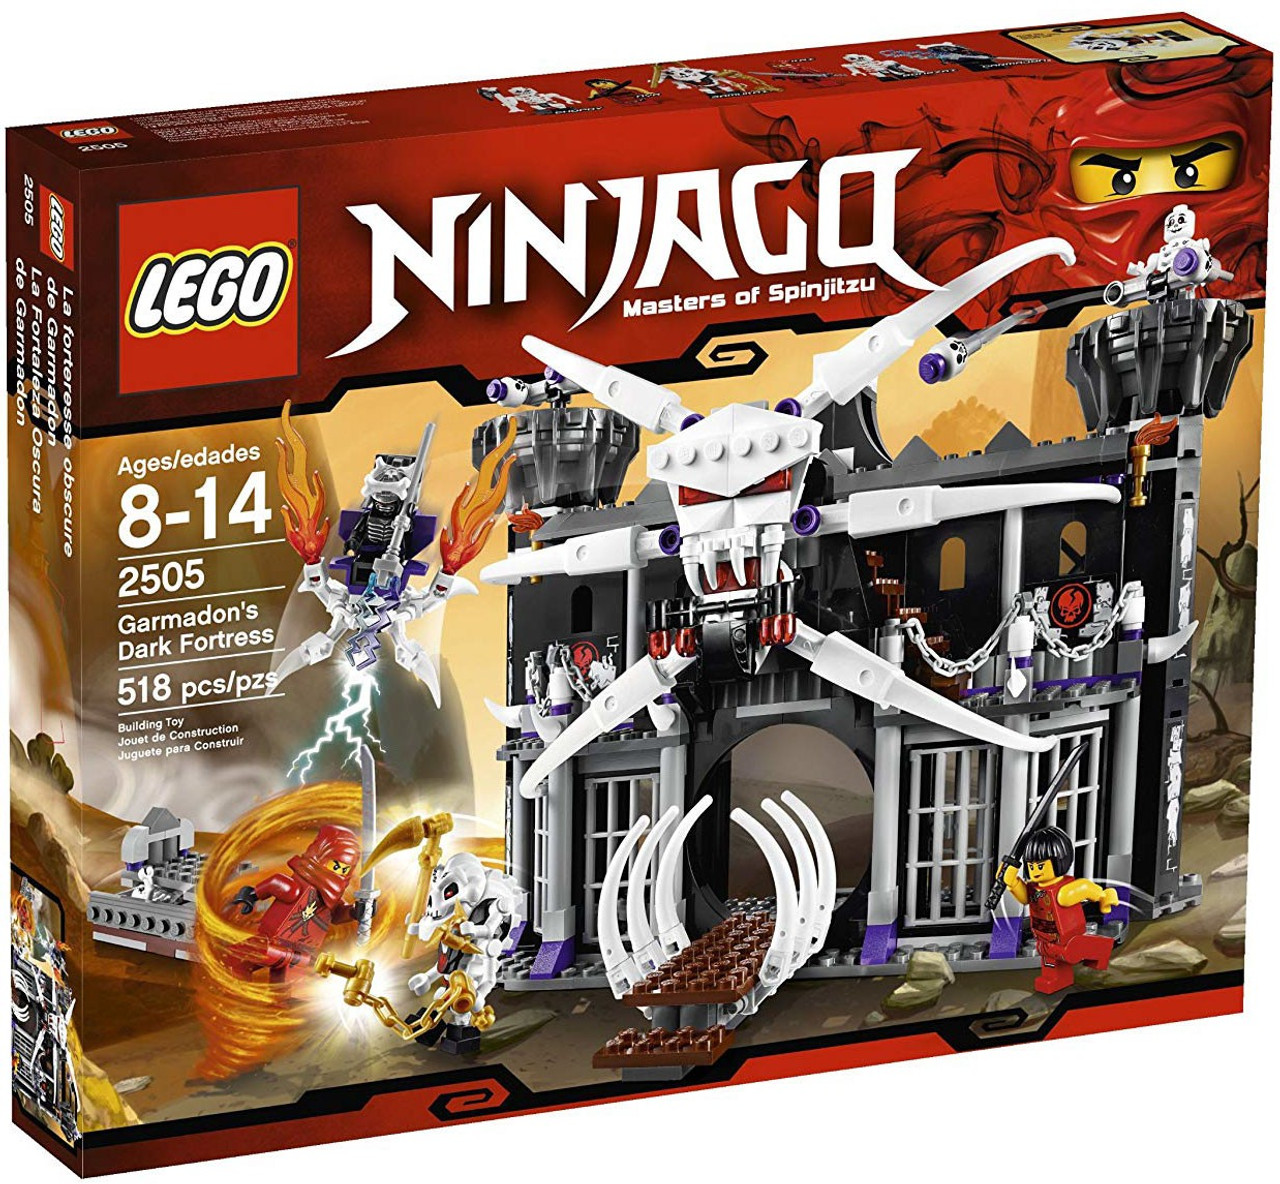 LEGO Ninjago Garmadons Dark Fortress Set 2505 - ToyWiz